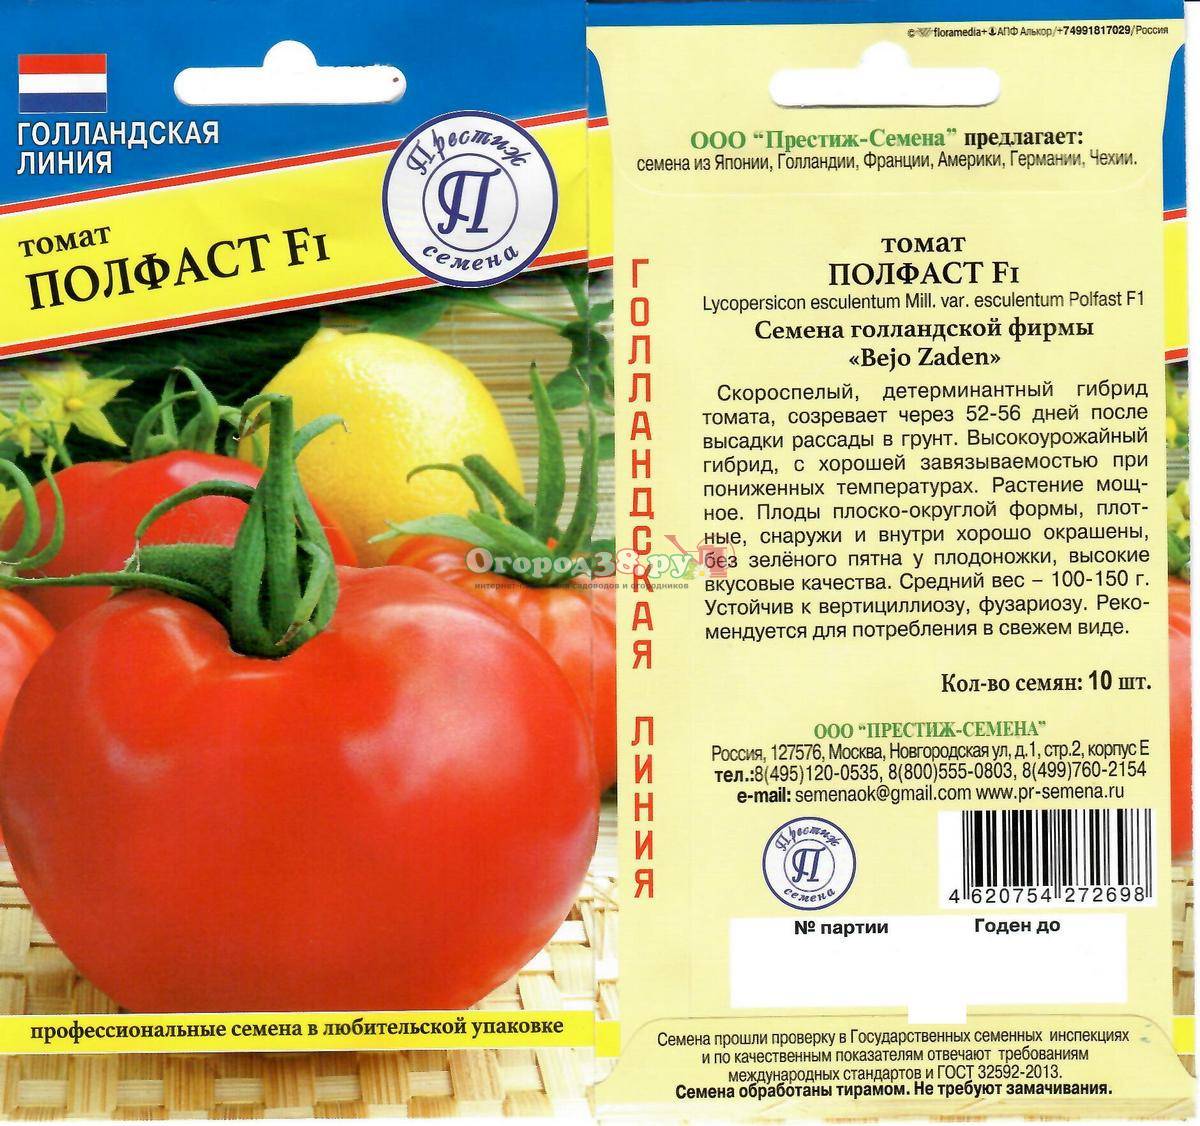 Полфаст: описание сорта томата, характеристики помидоров, посев